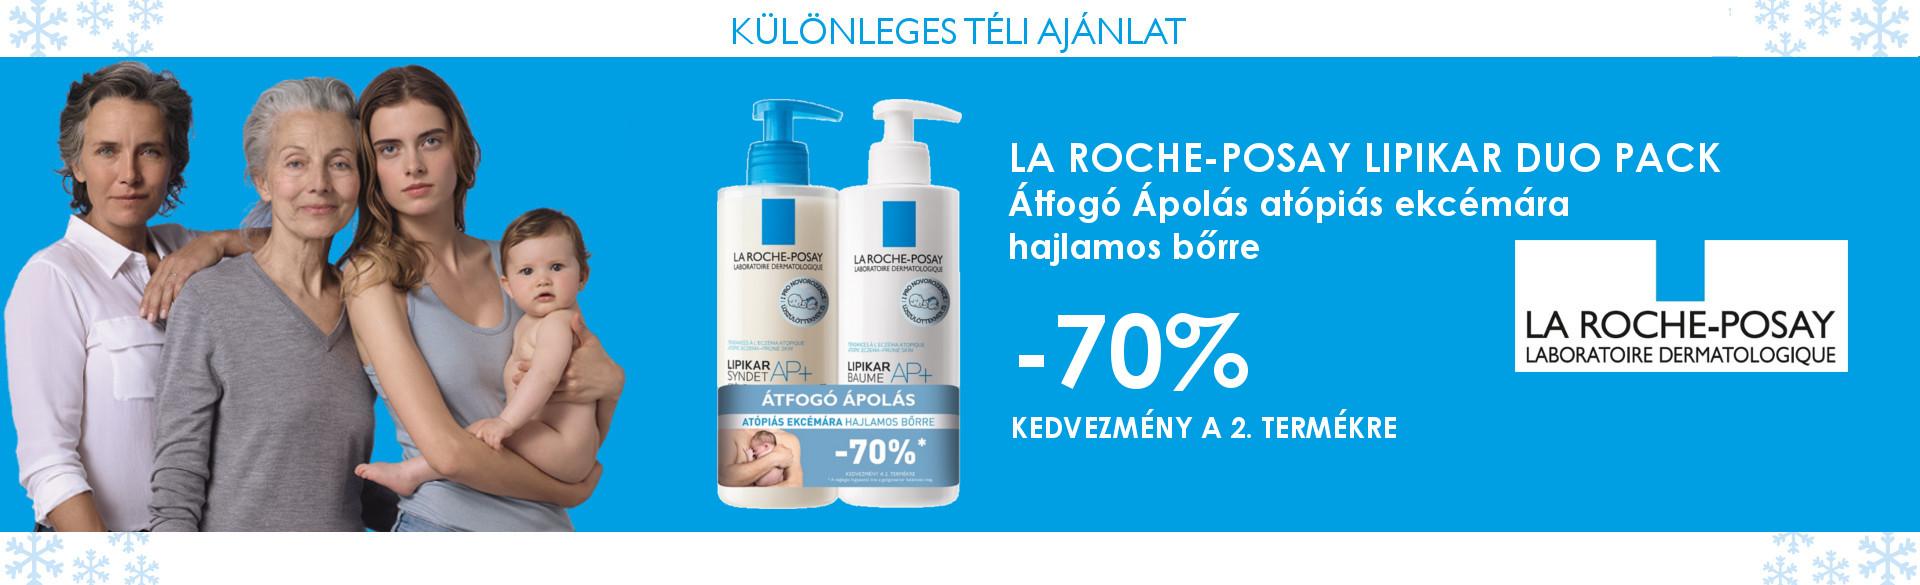 La Roche-Posay Lipikar Duo Pack Átfogó ápolás atópiás ekcémára hajlamos bőrre: 70% kedvezményt adunk a 2. termékre!